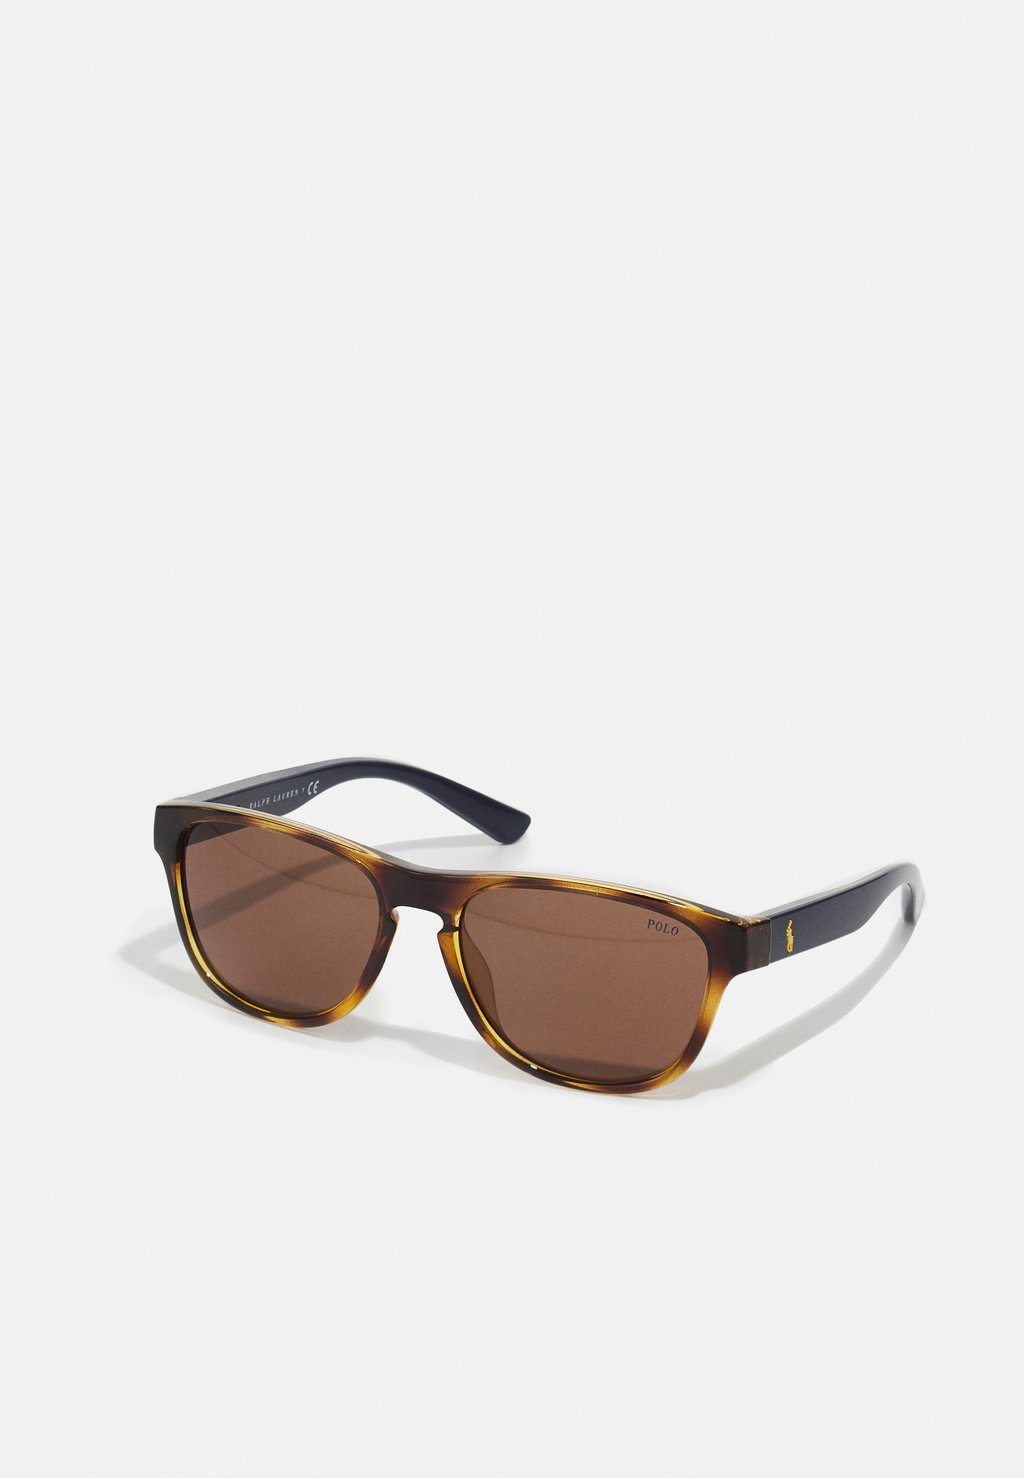 Солнцезащитные очки Polo Ralph Lauren, коричневый солнцезащитные очки ralph lauren квадратные коричневый